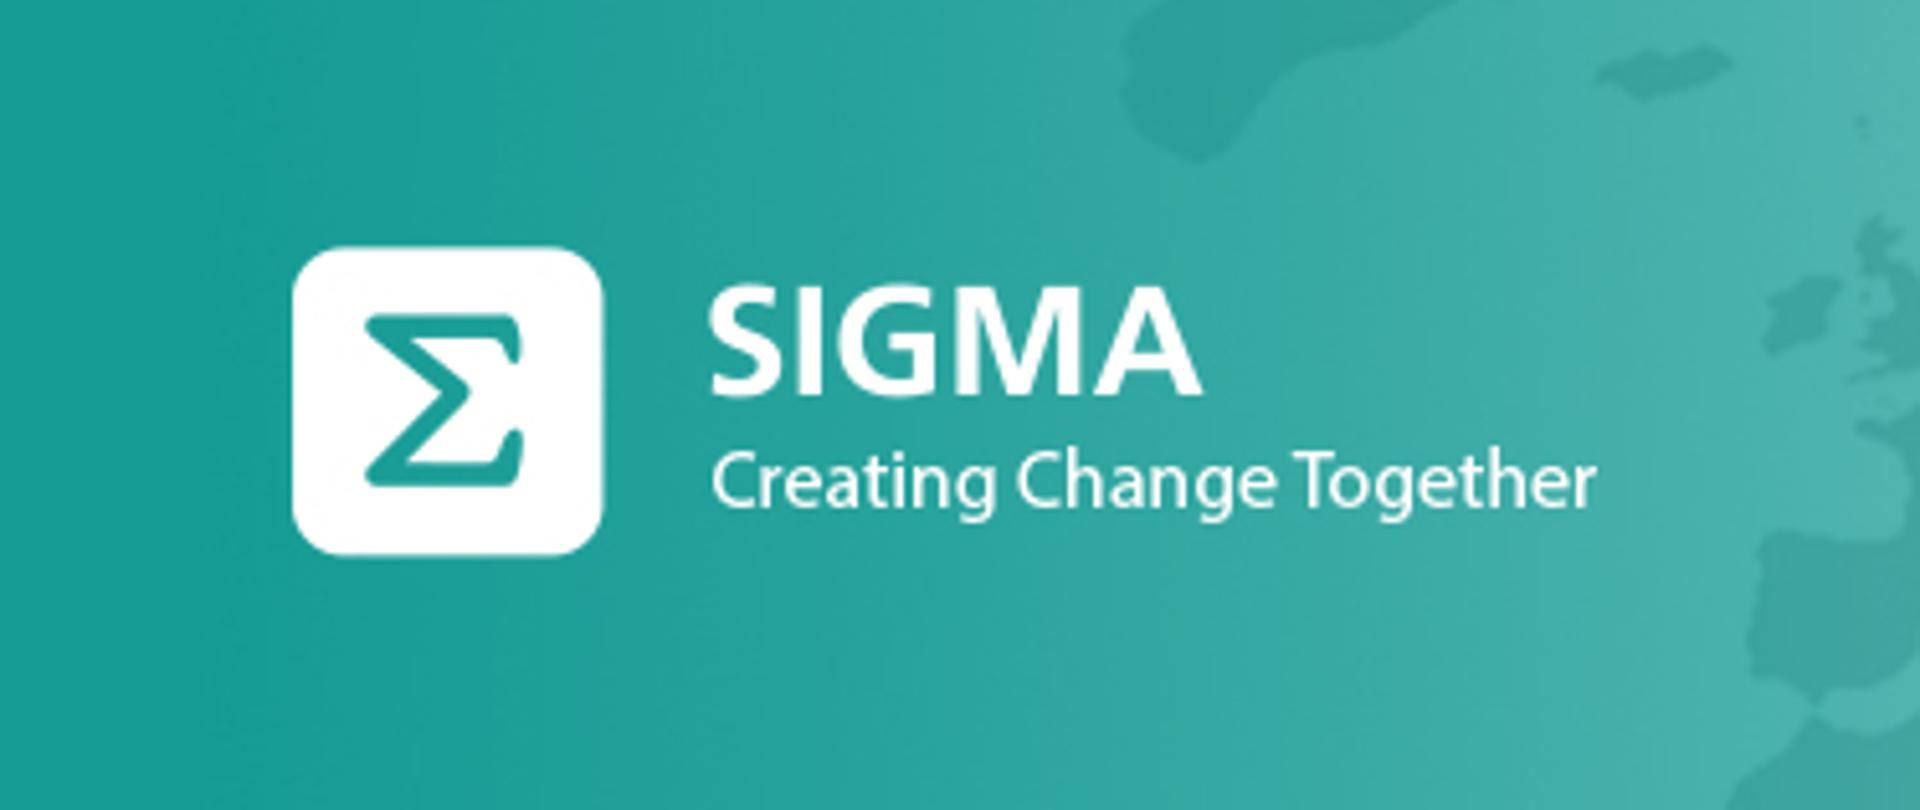 Logo inicjatywy SIGMA na turkusowym tle